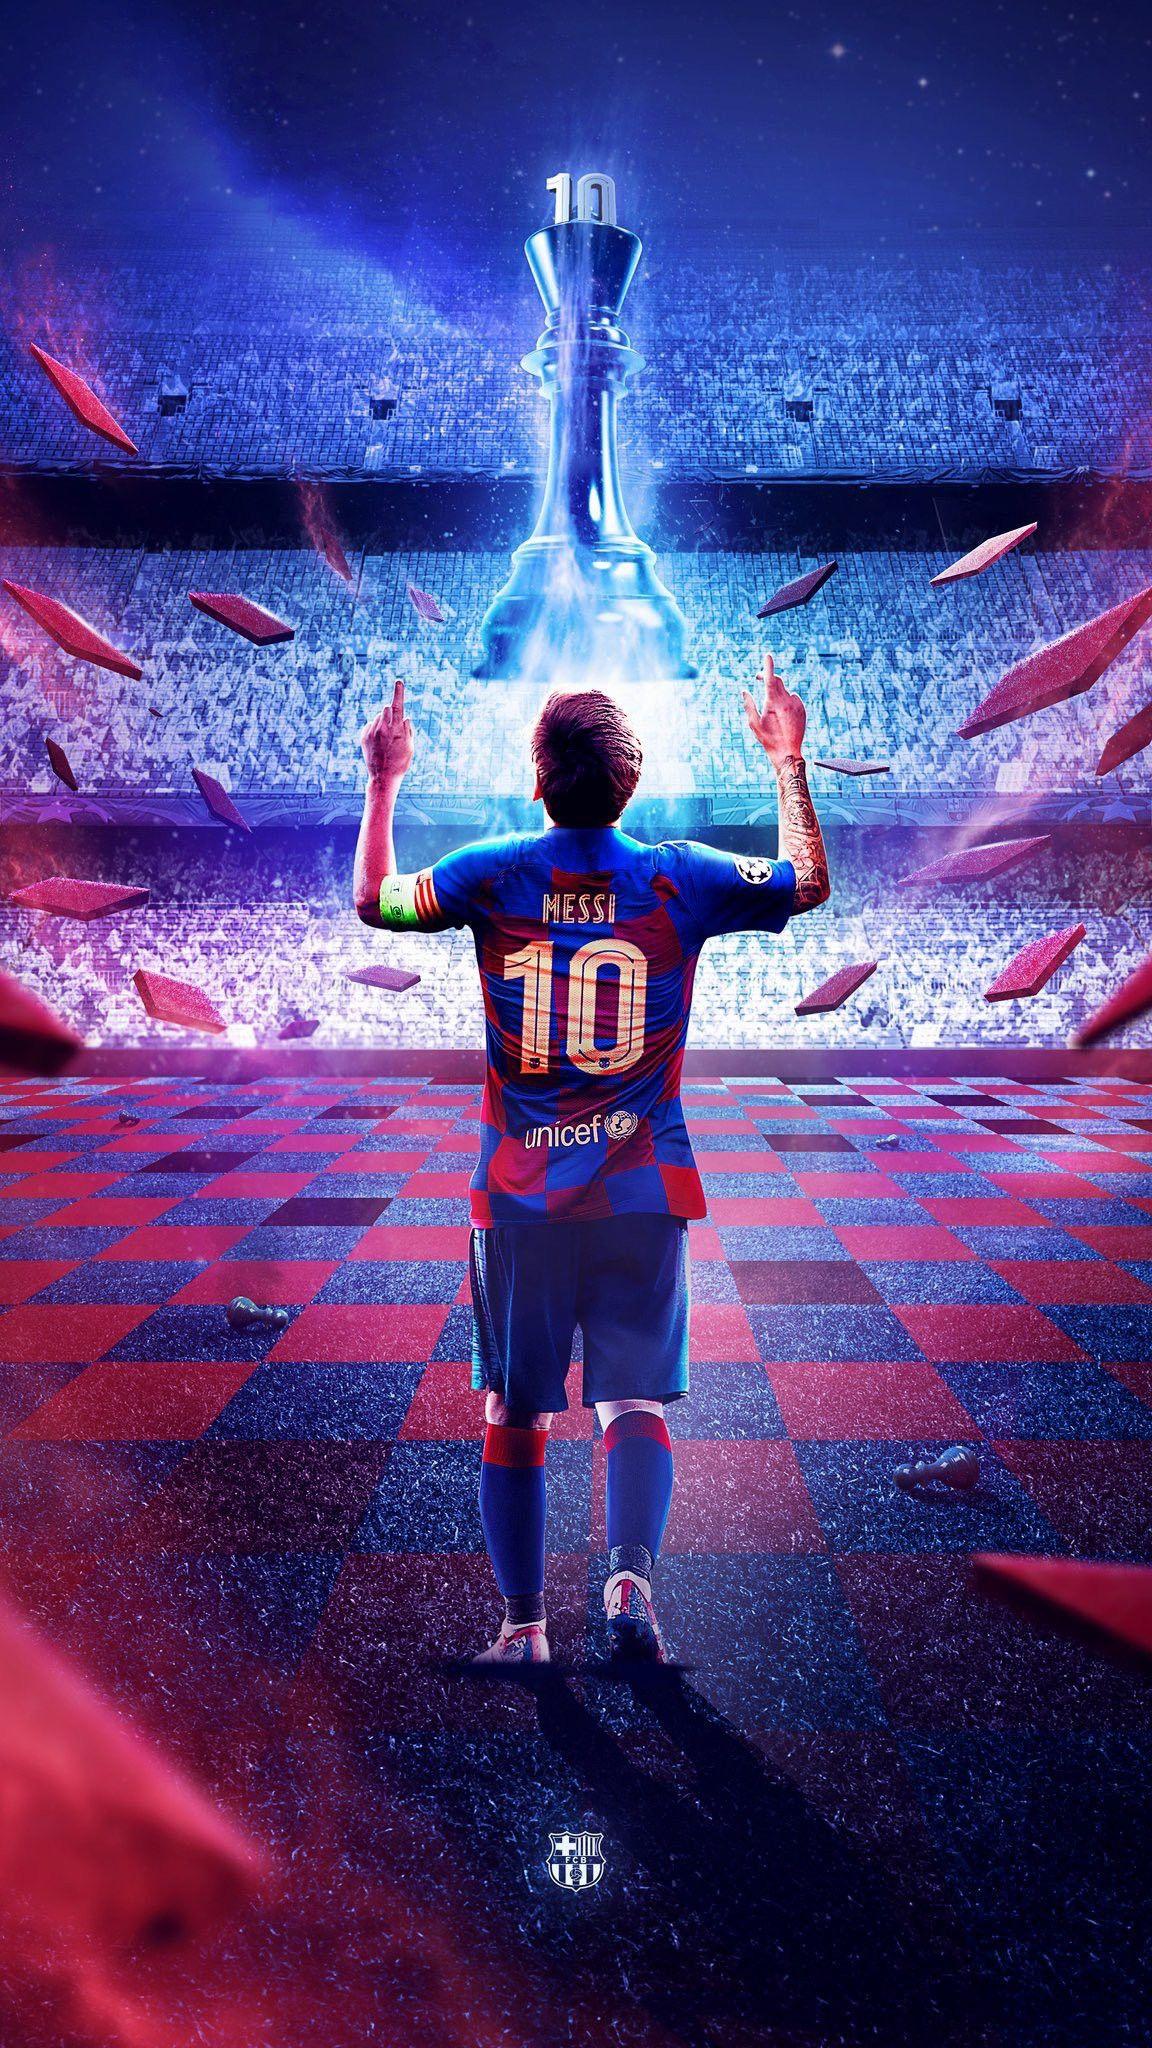 Bạn muốn một hình nền Messi 4K cao cấp nhất cho điện thoại của mình? Thì hãy tìm không nơi khác, đây chính là sự lựa chọn hoàn hảo dành cho bạn! Hãy cùng ngắm nhìn vẻ đẹp huyền thoại của Messi trong mọi thời đại.